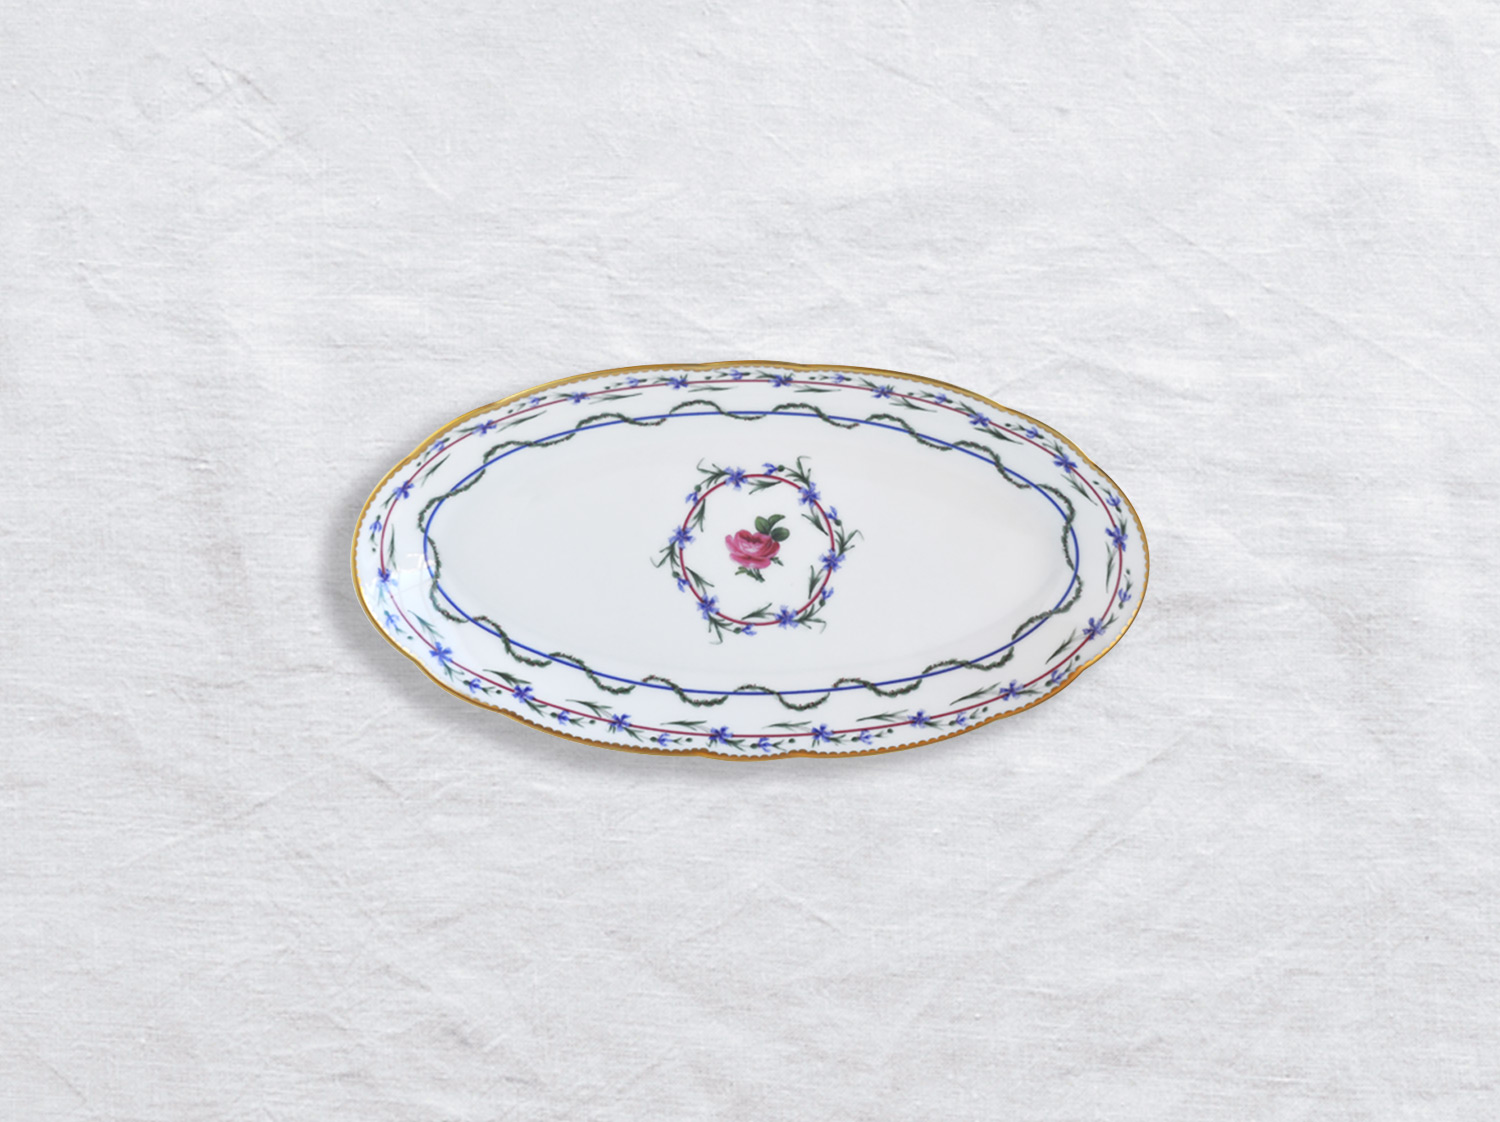 Ravier 23 x 12 cm H. 2.5 cm en porcelaine de la collection Gobelet du roy Bernardaud